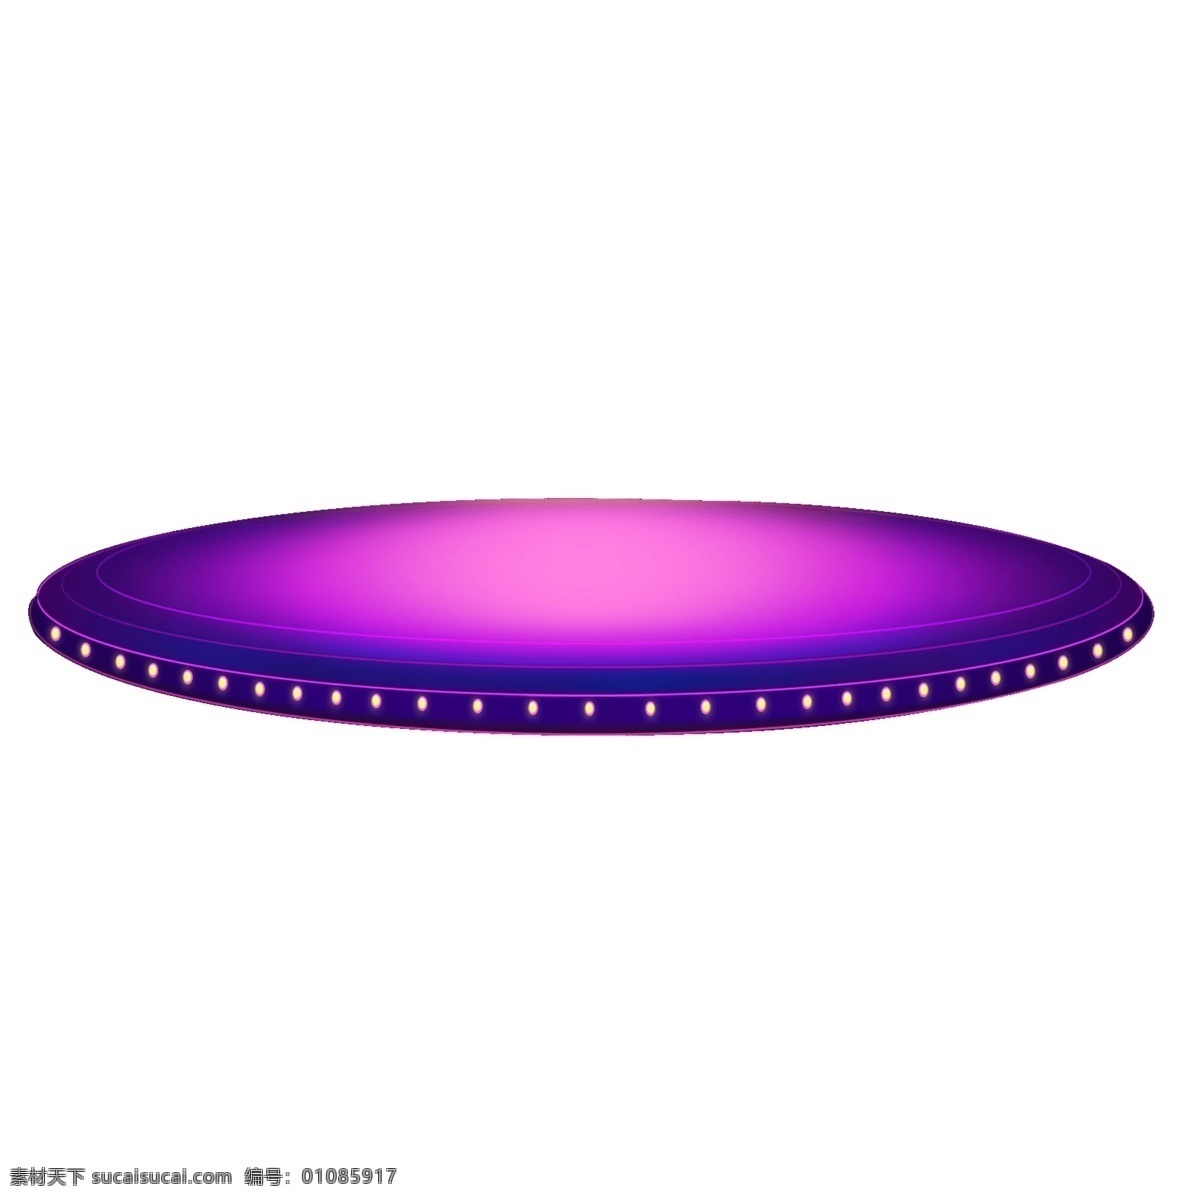 紫色 圆形 舞台 明灯装饰 渐变色 装饰素材